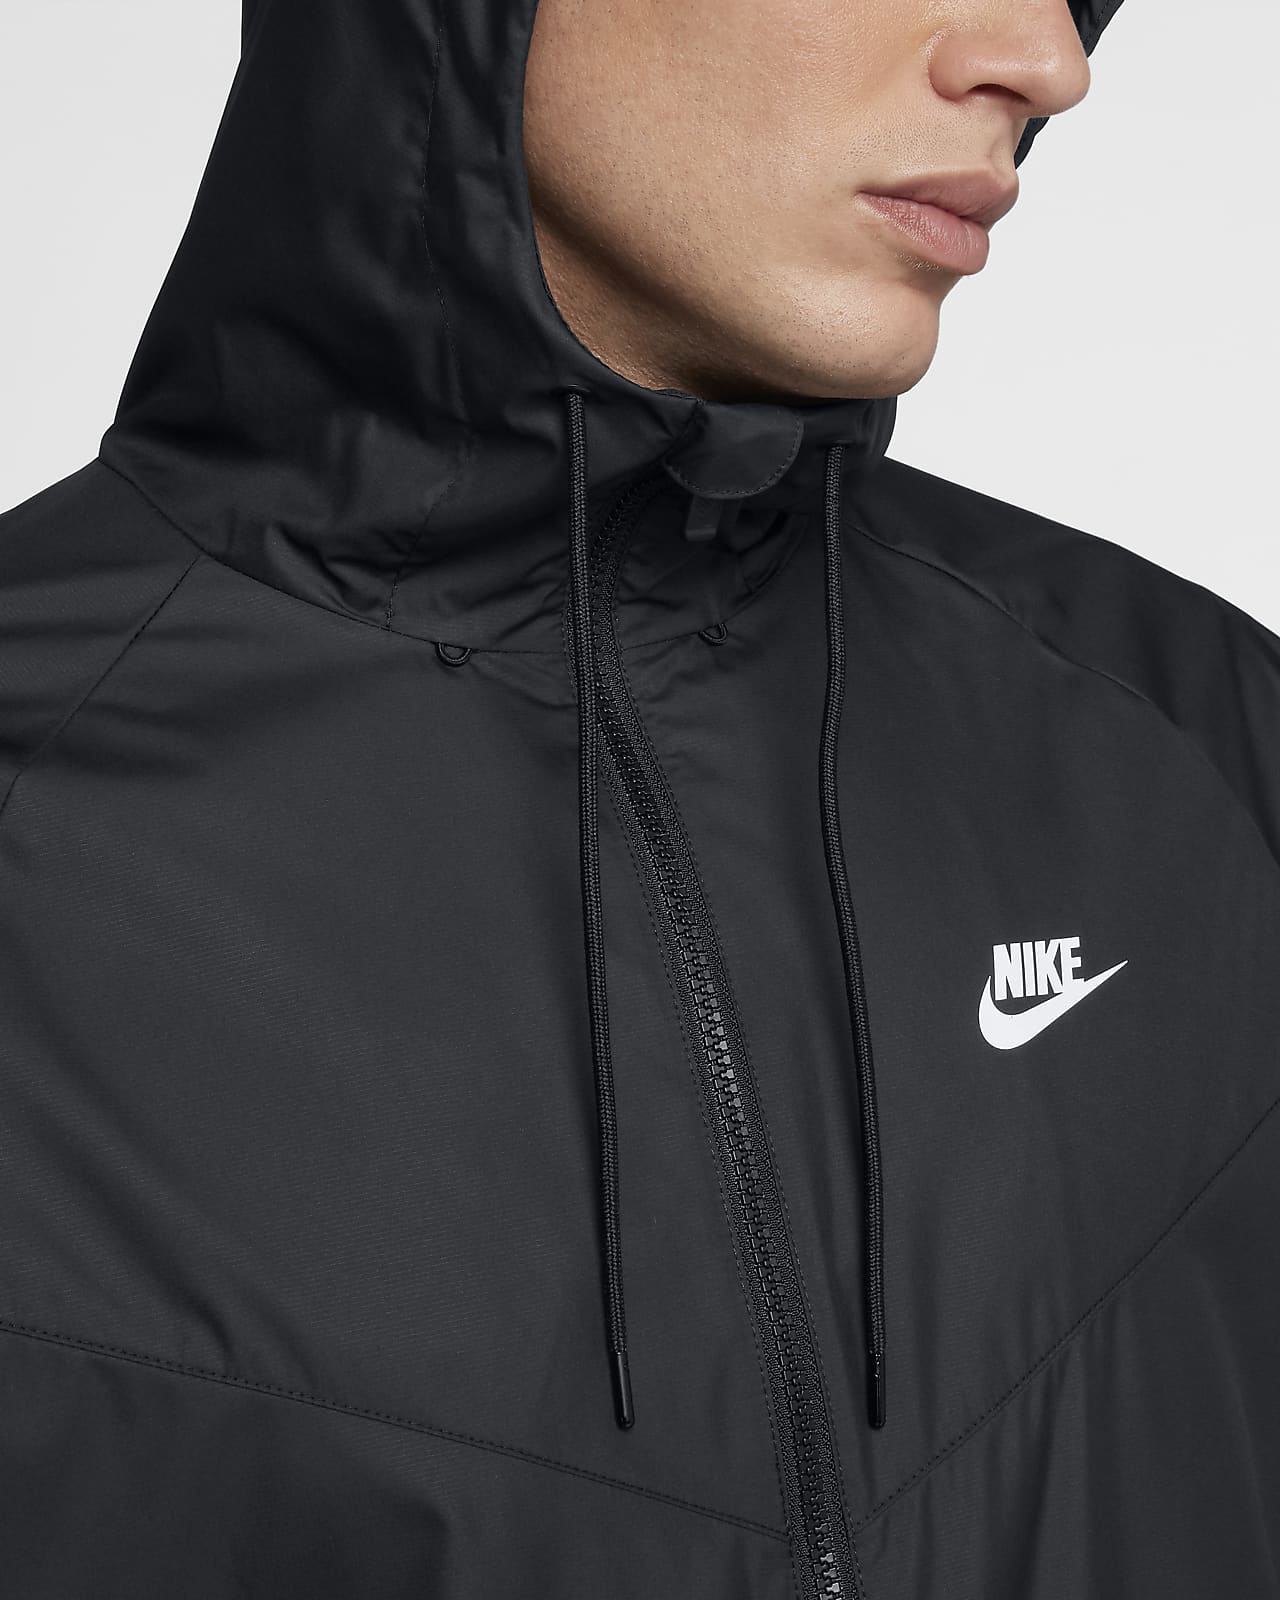 Men\'s Nike Sportswear Jacket. Windrunner